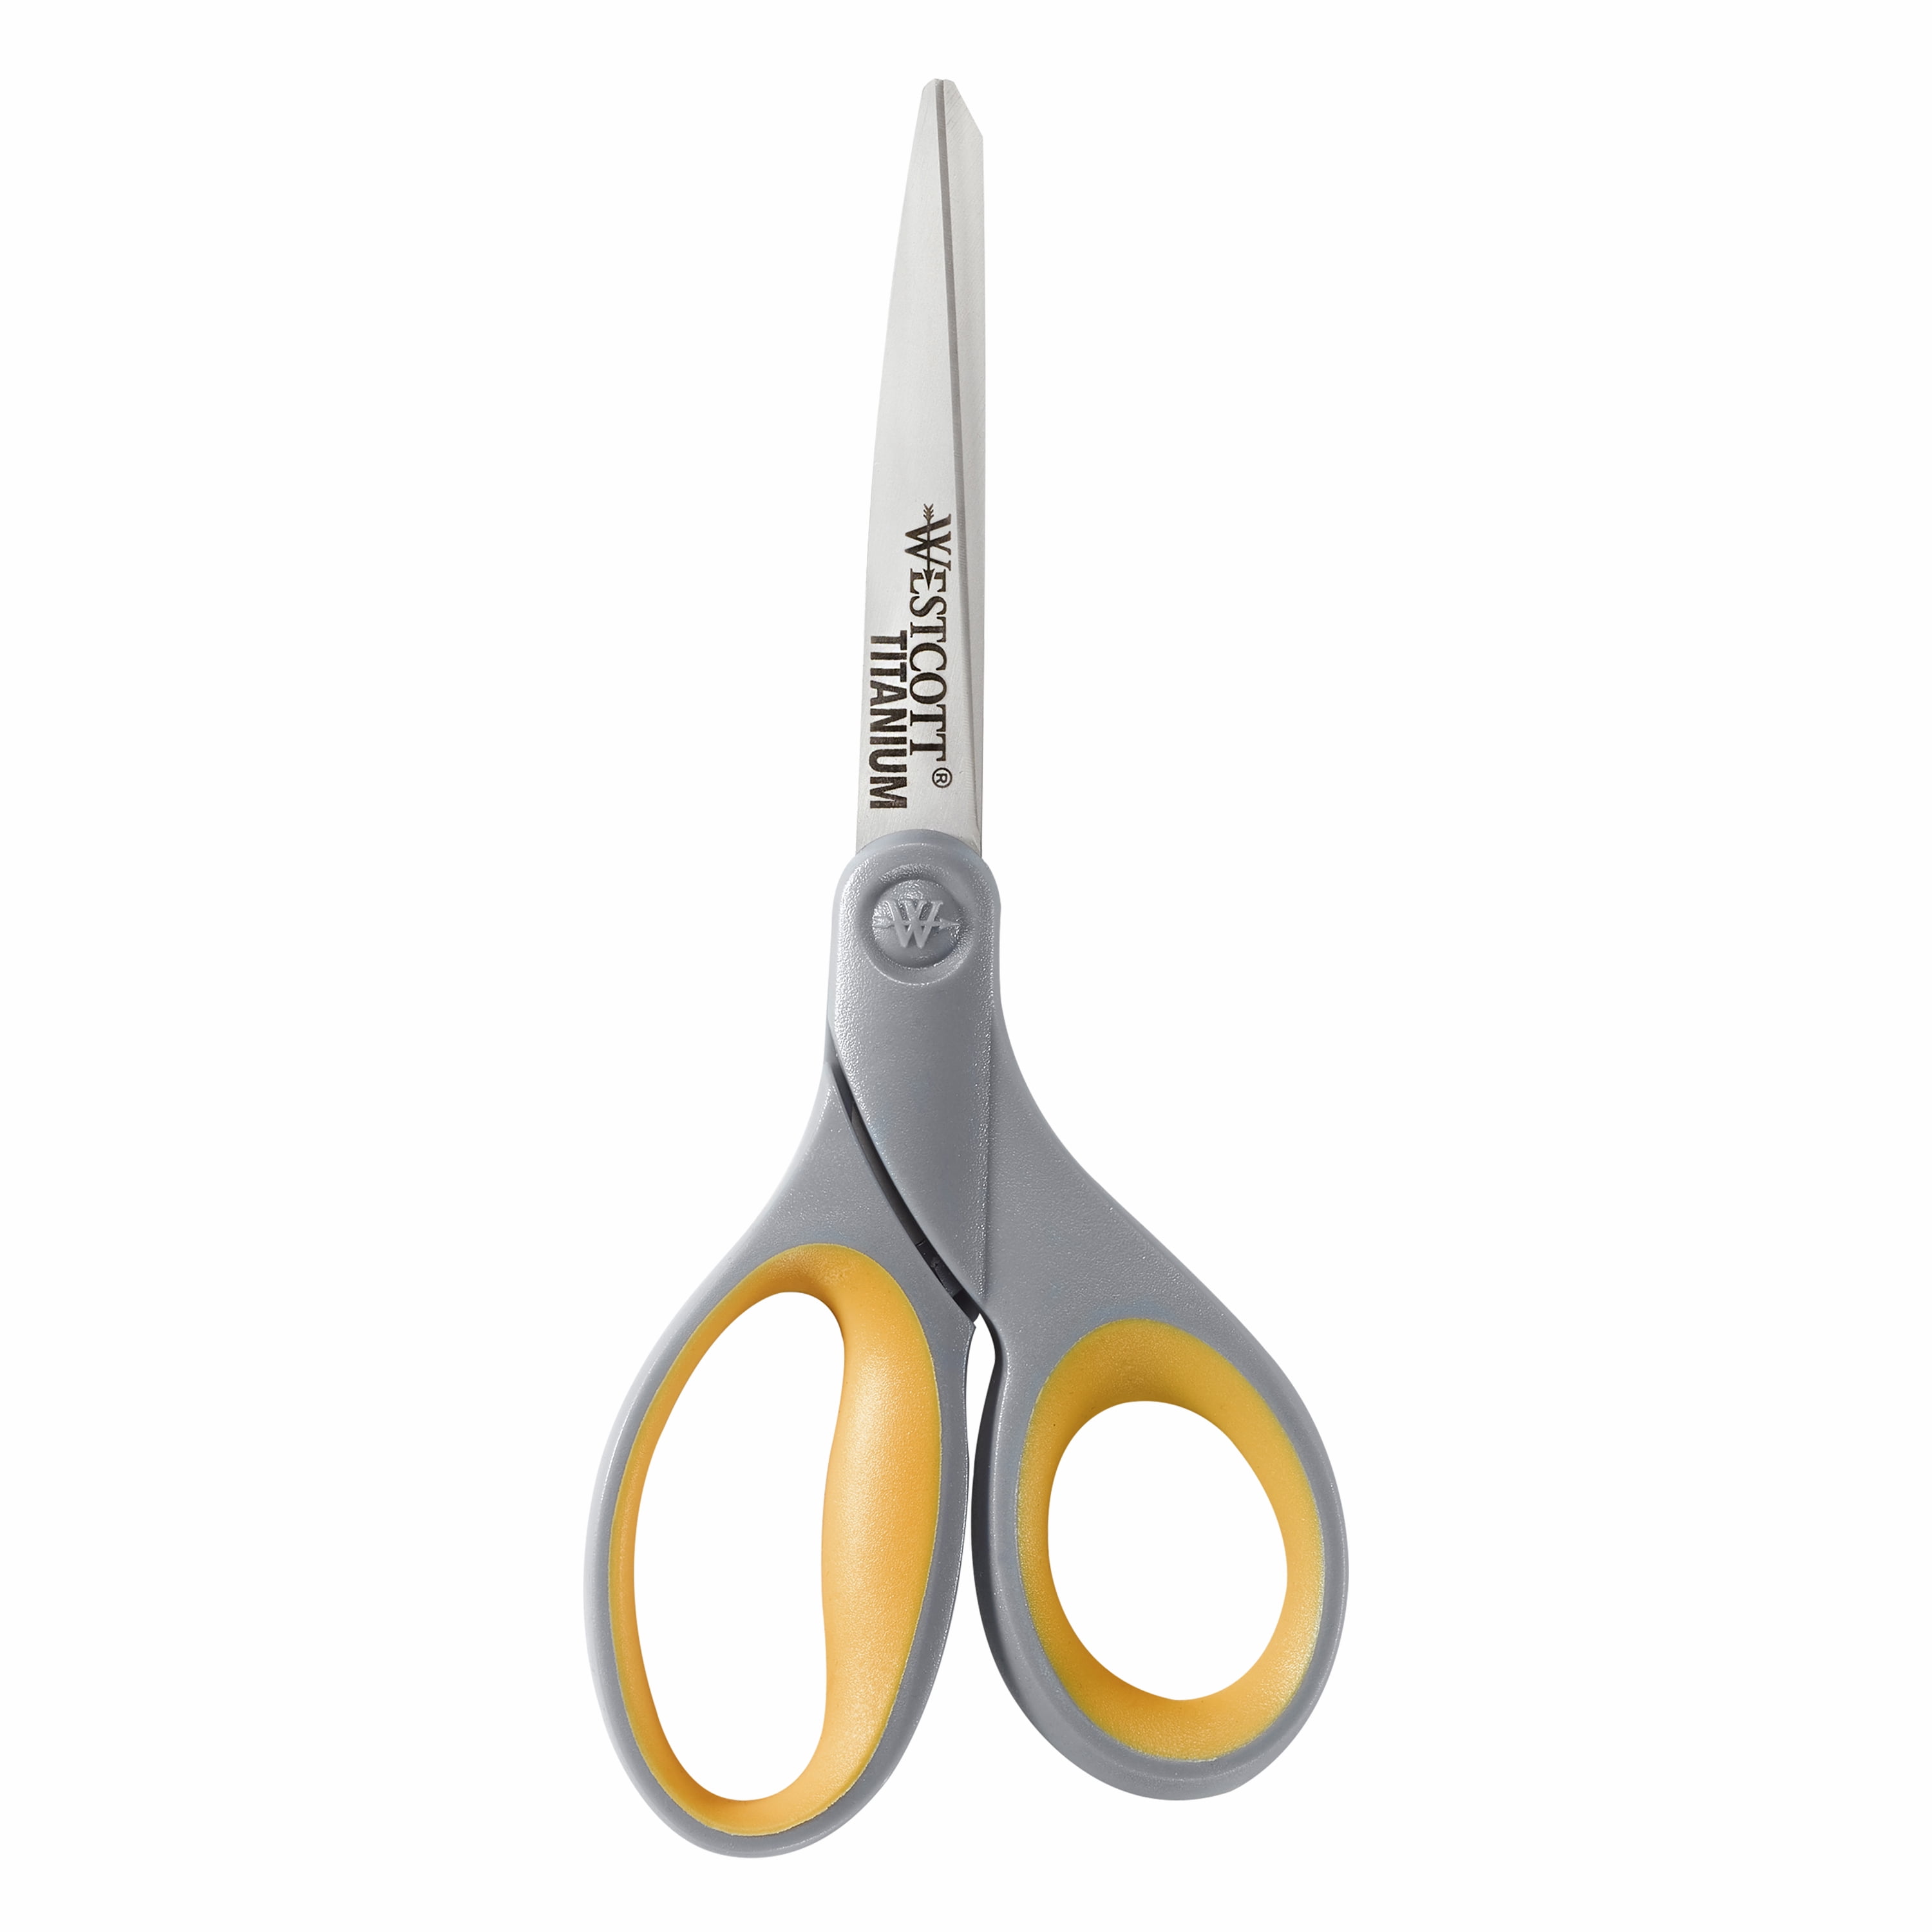 westcott titanium scissors 13867 cross stitch scissors